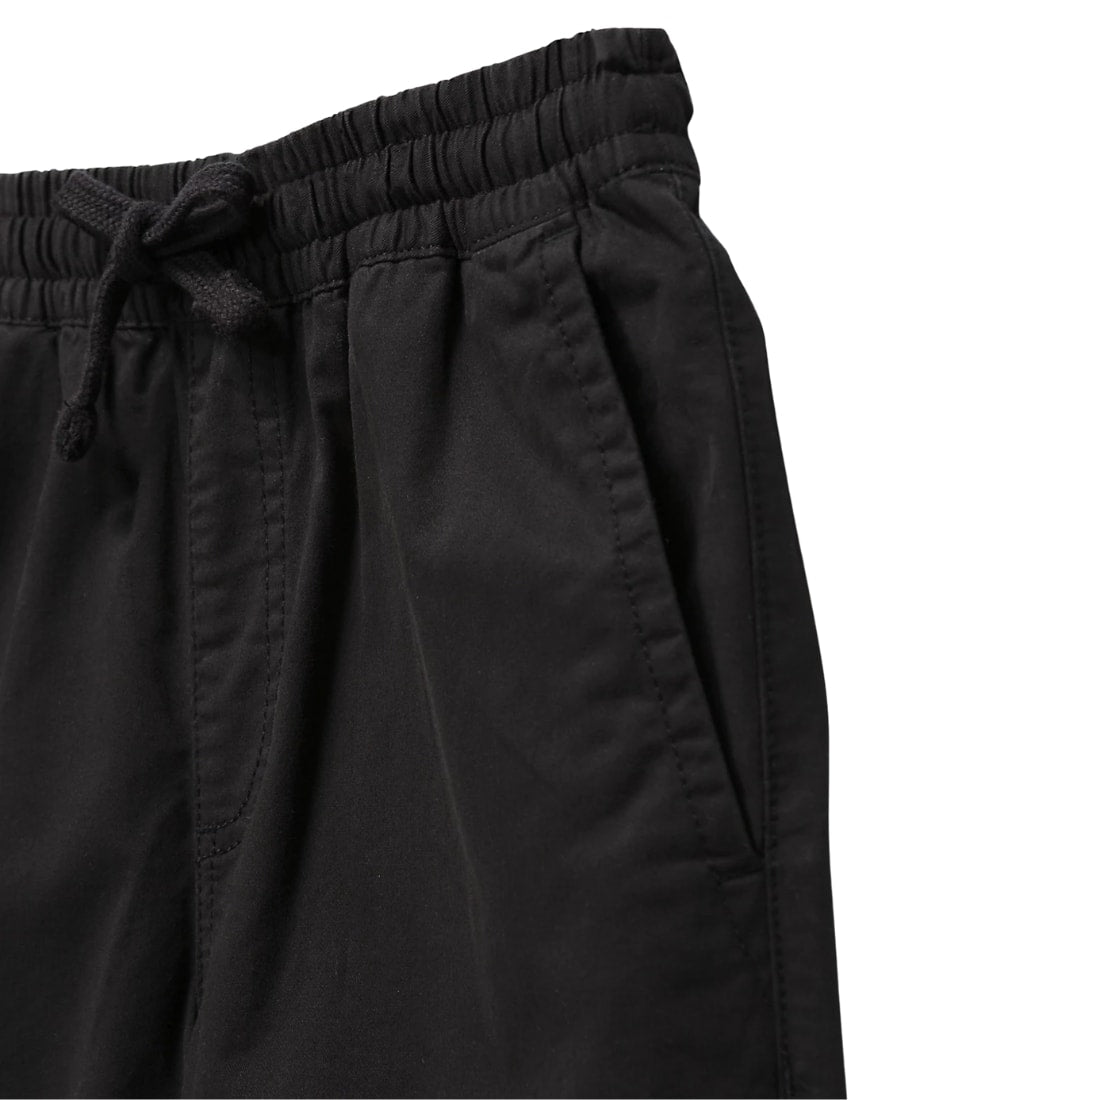 Vans Kids Range Elastic Waist Trousers - Black - Boys Chino Pants/Trousers by Vans